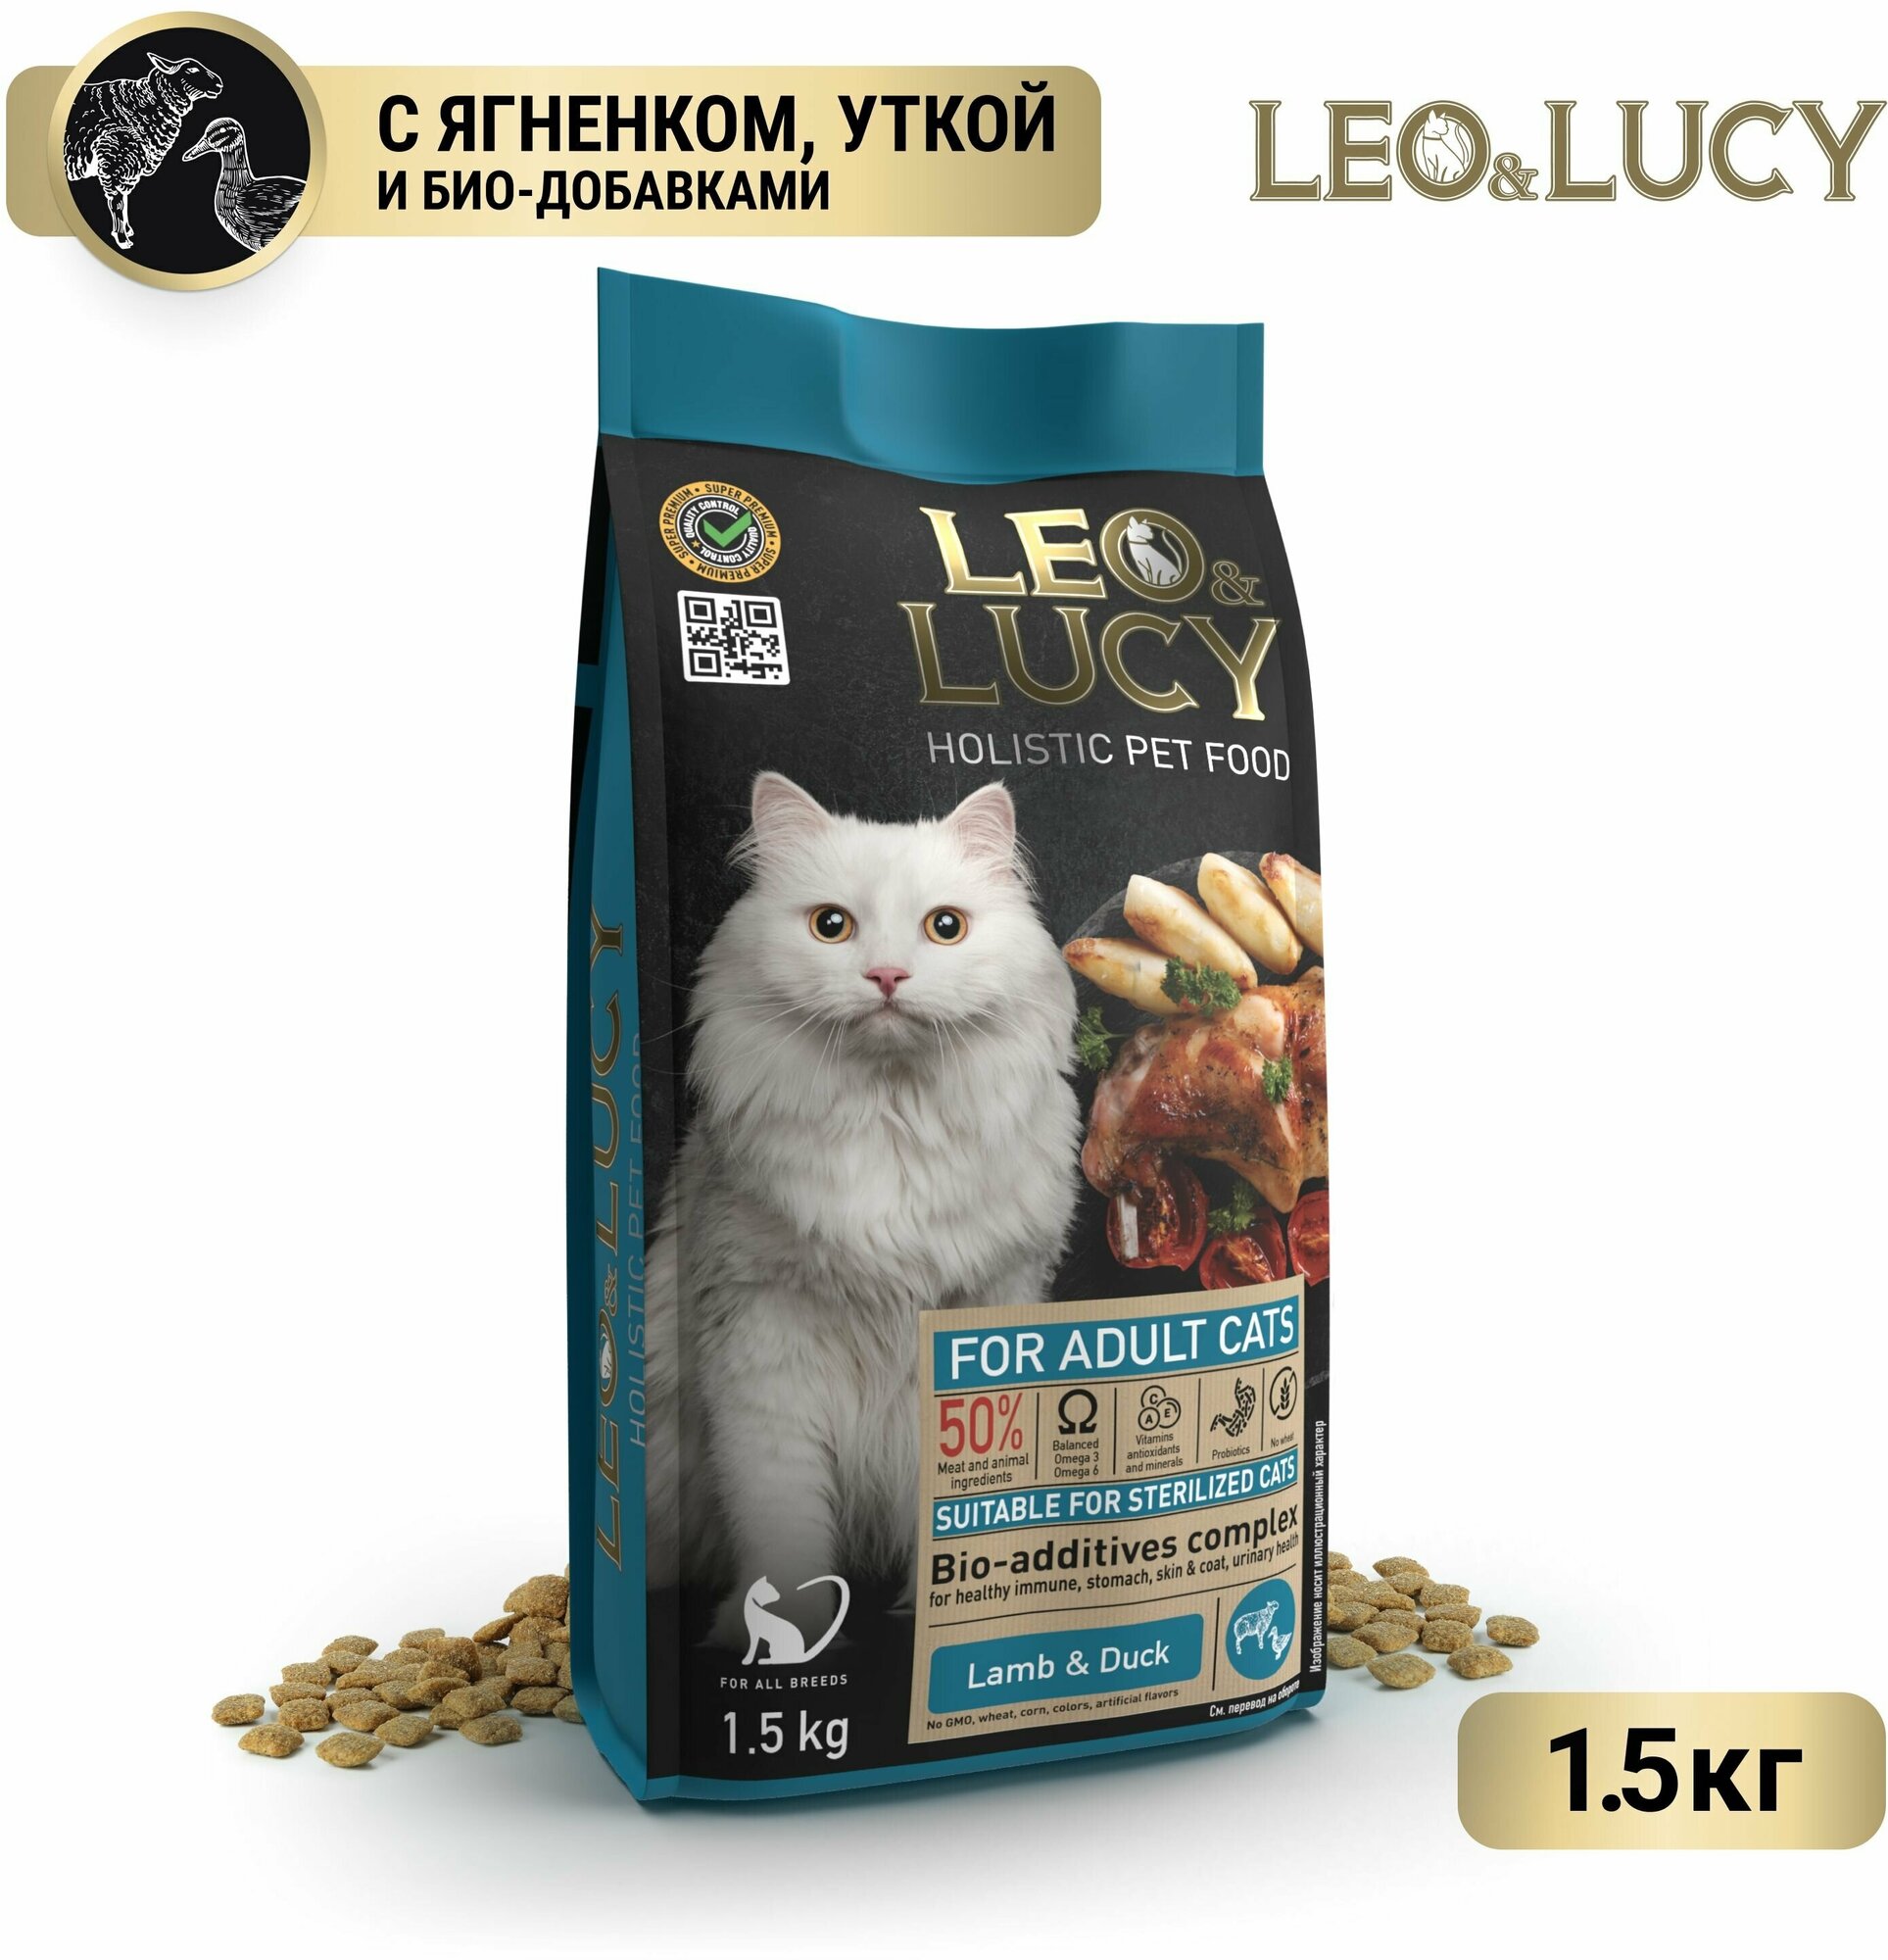 LEO&LUCY cухой холистик корм полнорационный для взрослых кошек с ягненком, уткой и биодобавками, подходит для стерилизованных, 1,5 кг.